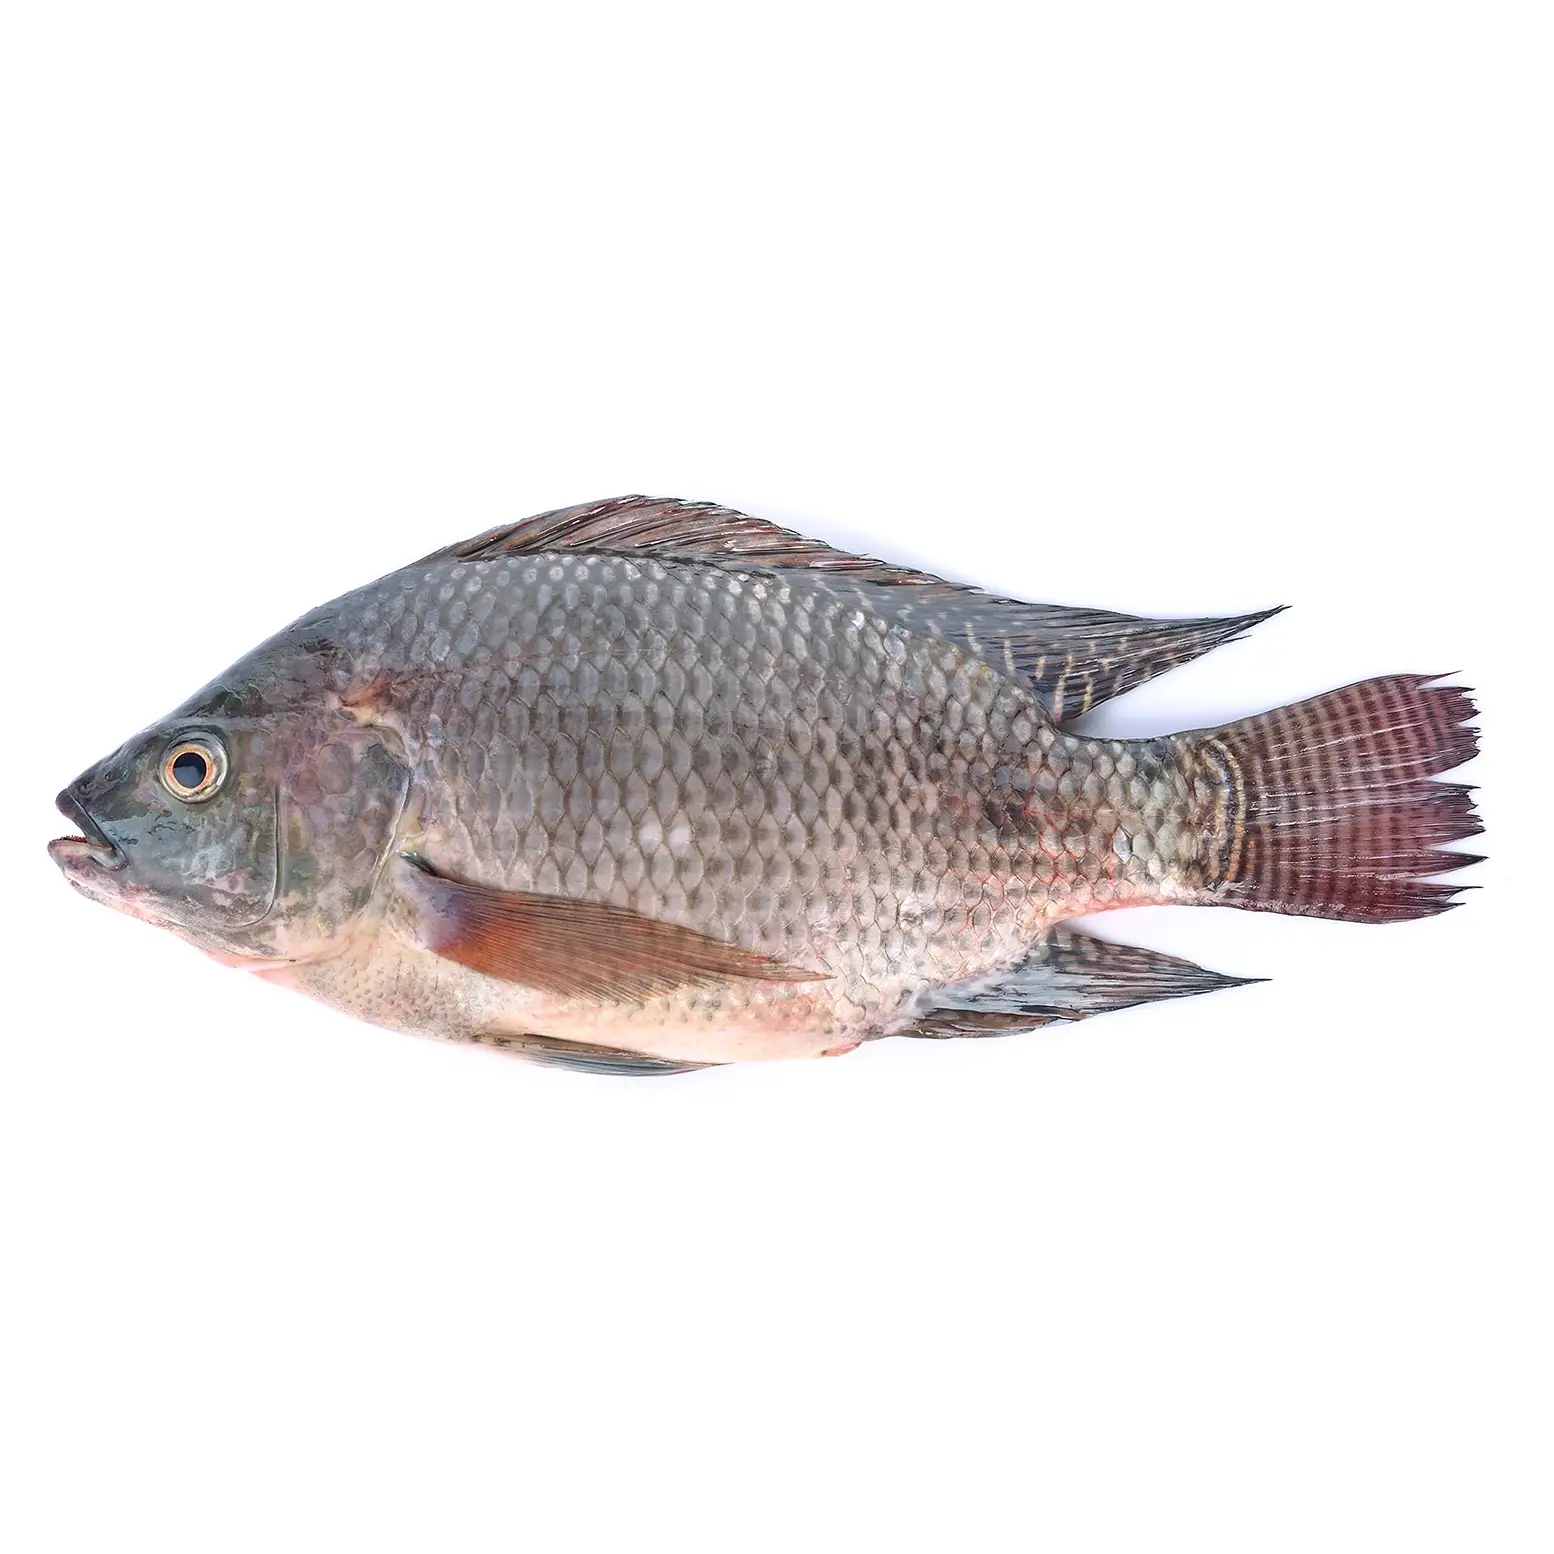 KAC - Carton  - TAIWANESE TILAPIA FISH 200/300 - 9KG